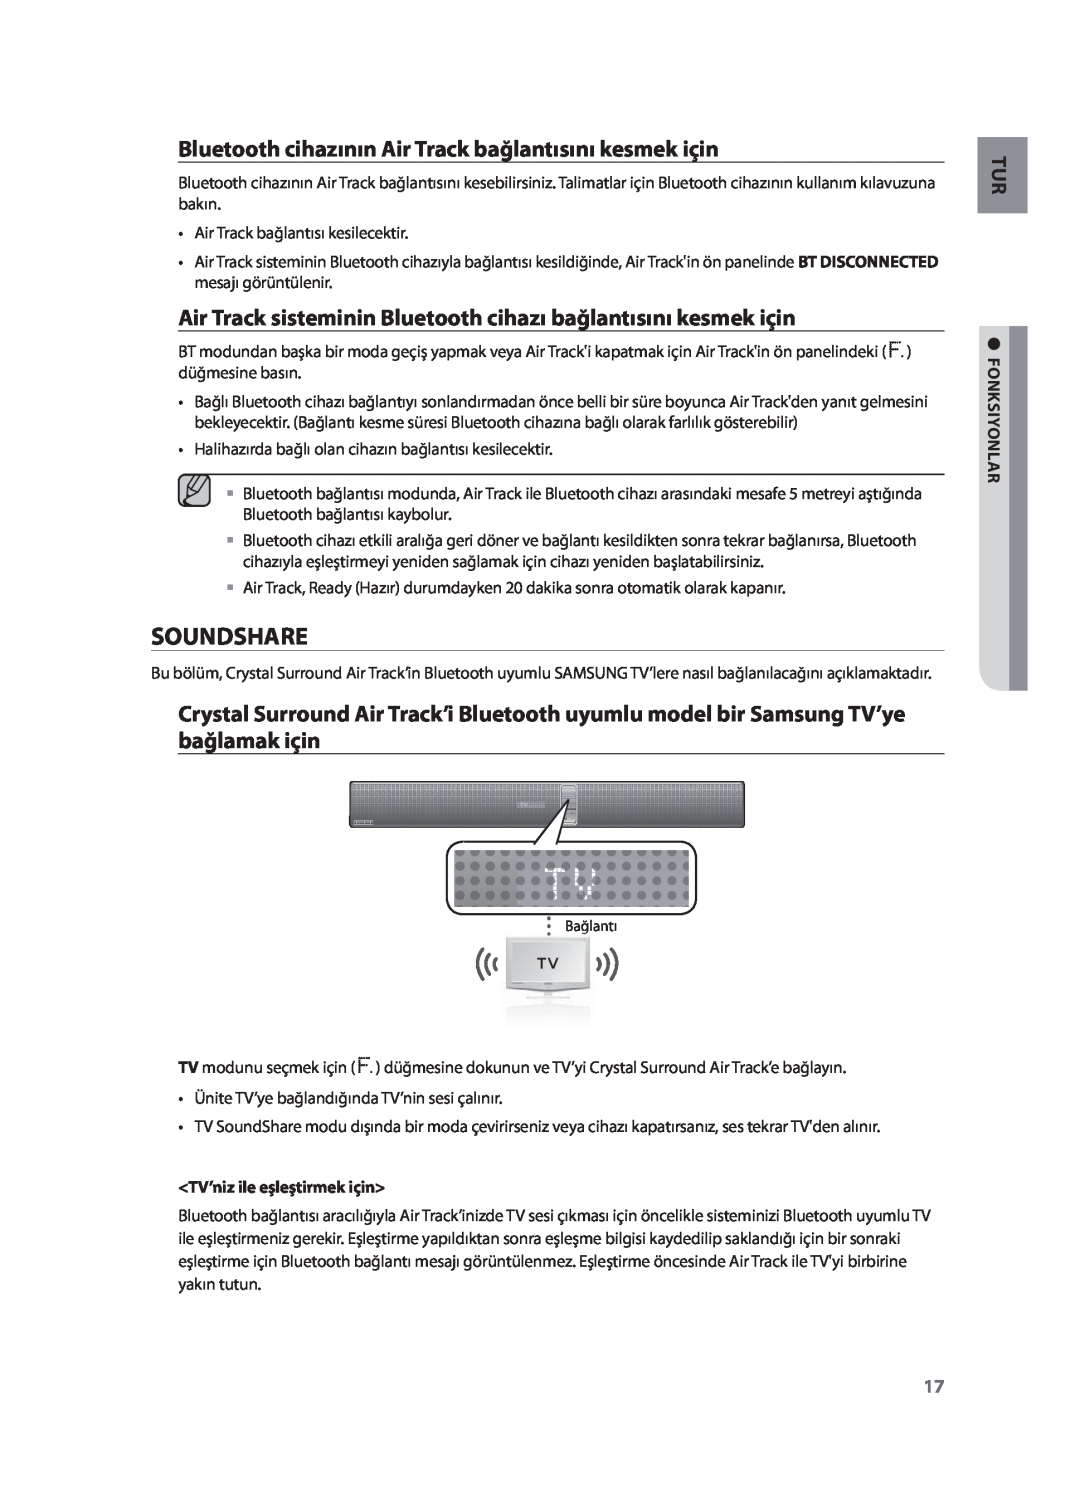 Samsung HW-F751/XN manual Soundshare, Bluetooth cihazının Air Track bağlantısını kesmek için, TV’niz ile eşleştirmek için 